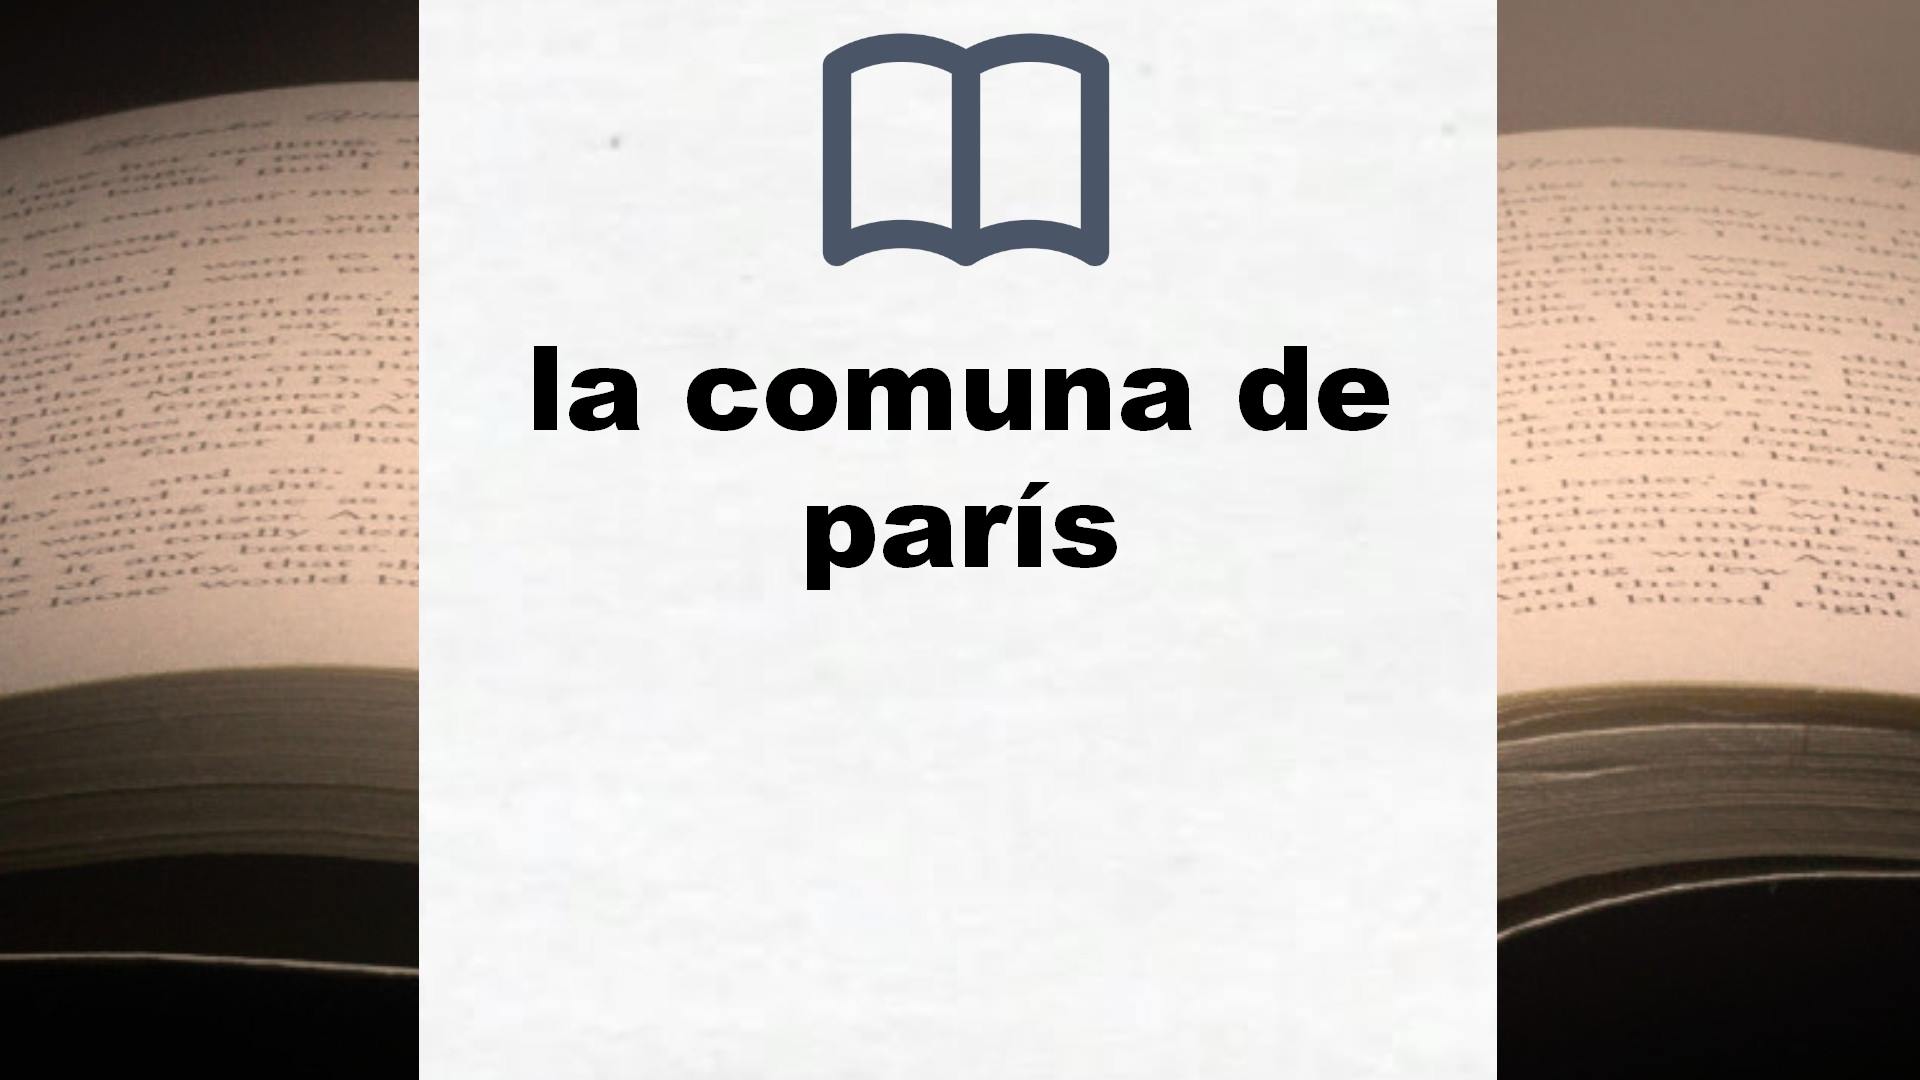 Libros sobre la comuna de parís